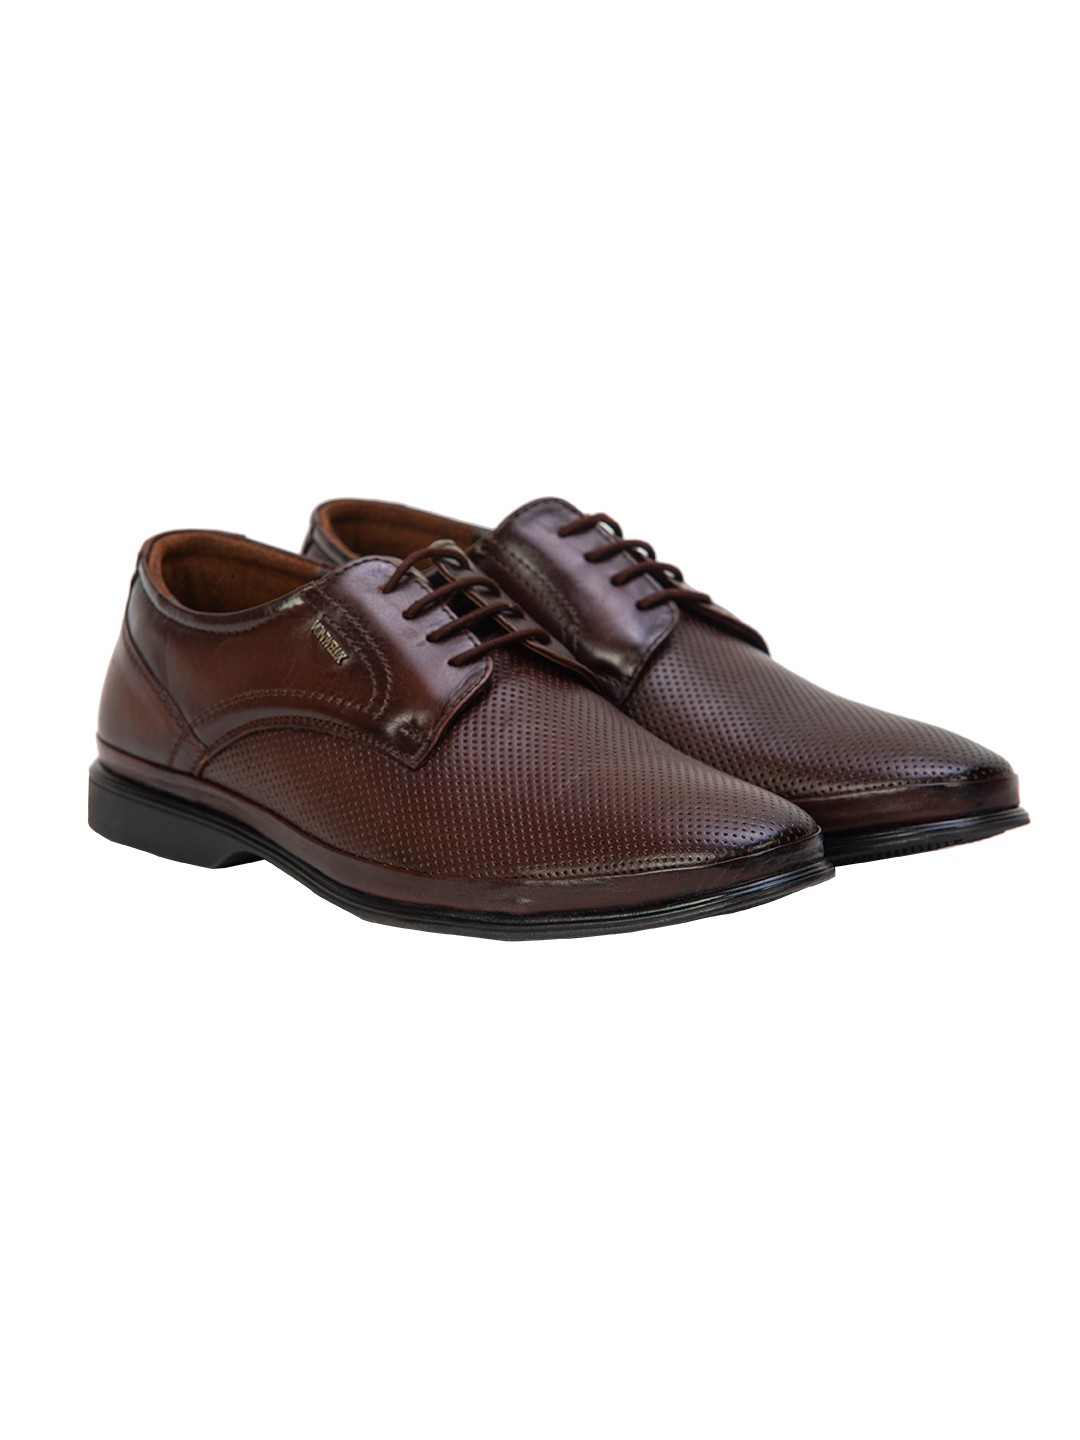 Buy Von Wellx Germany Comfort Coen Brown Shoes Online in Haora